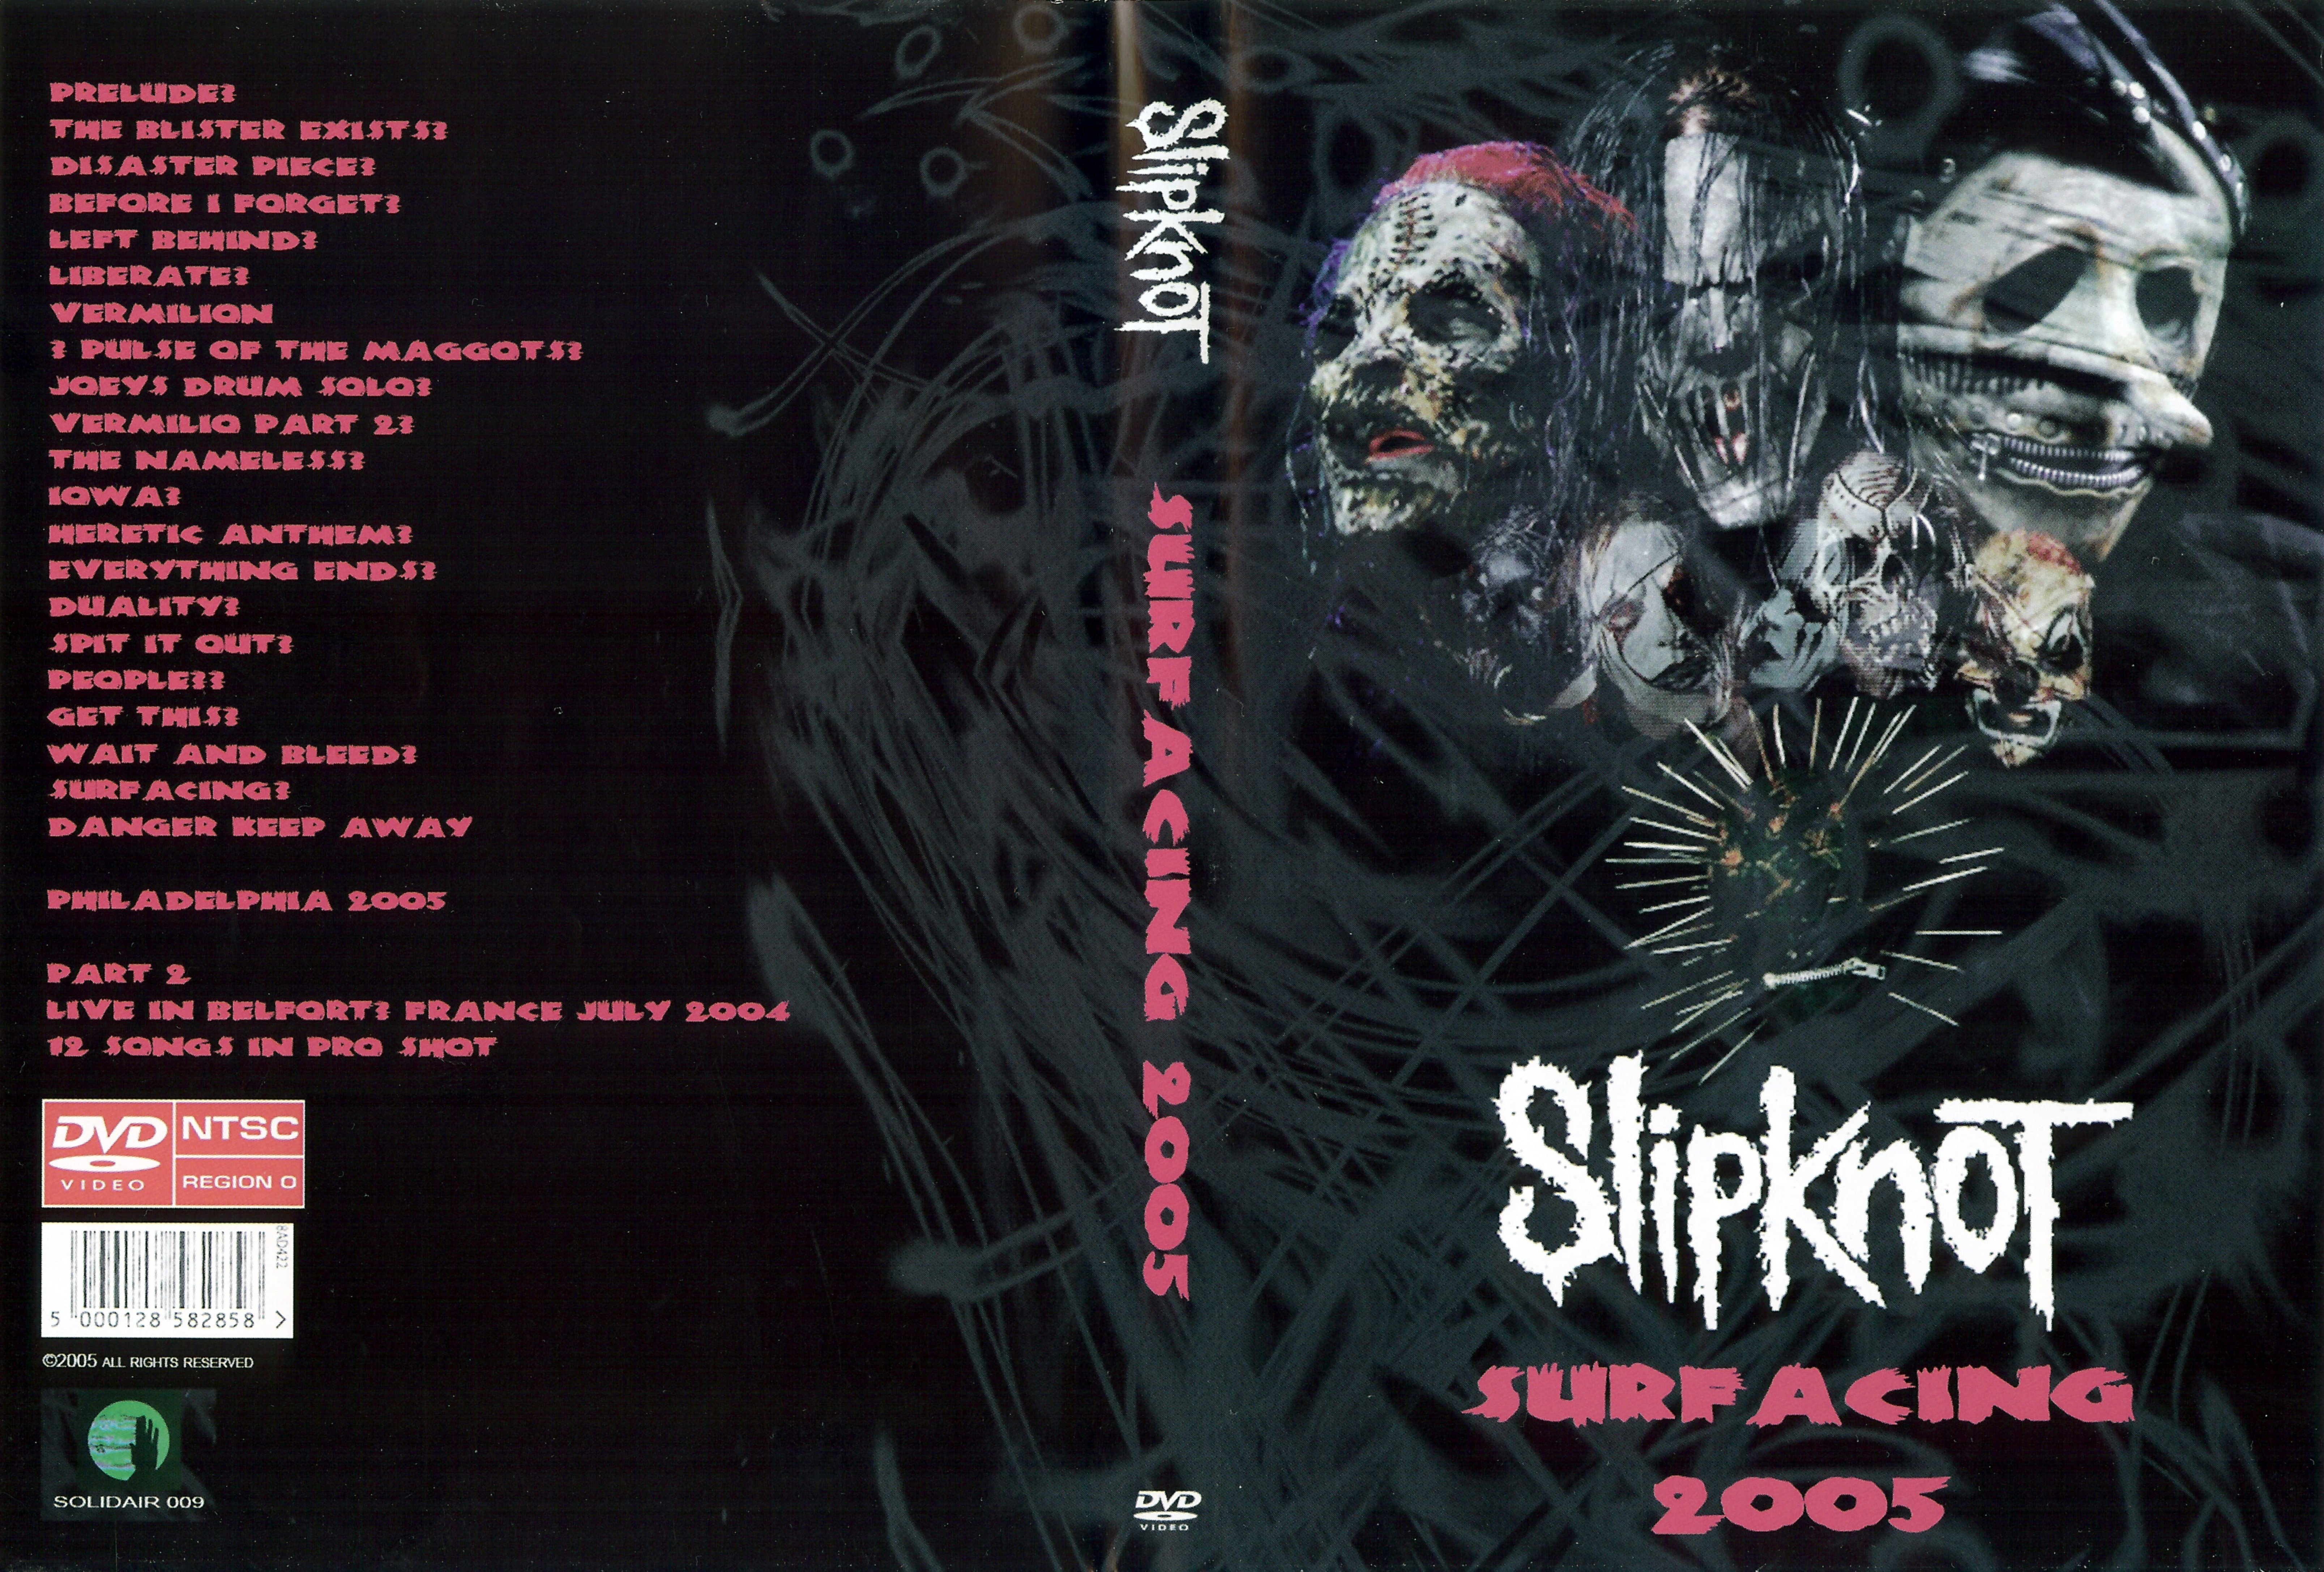 Jaquette DVD Slipknot - Surf acing 2005